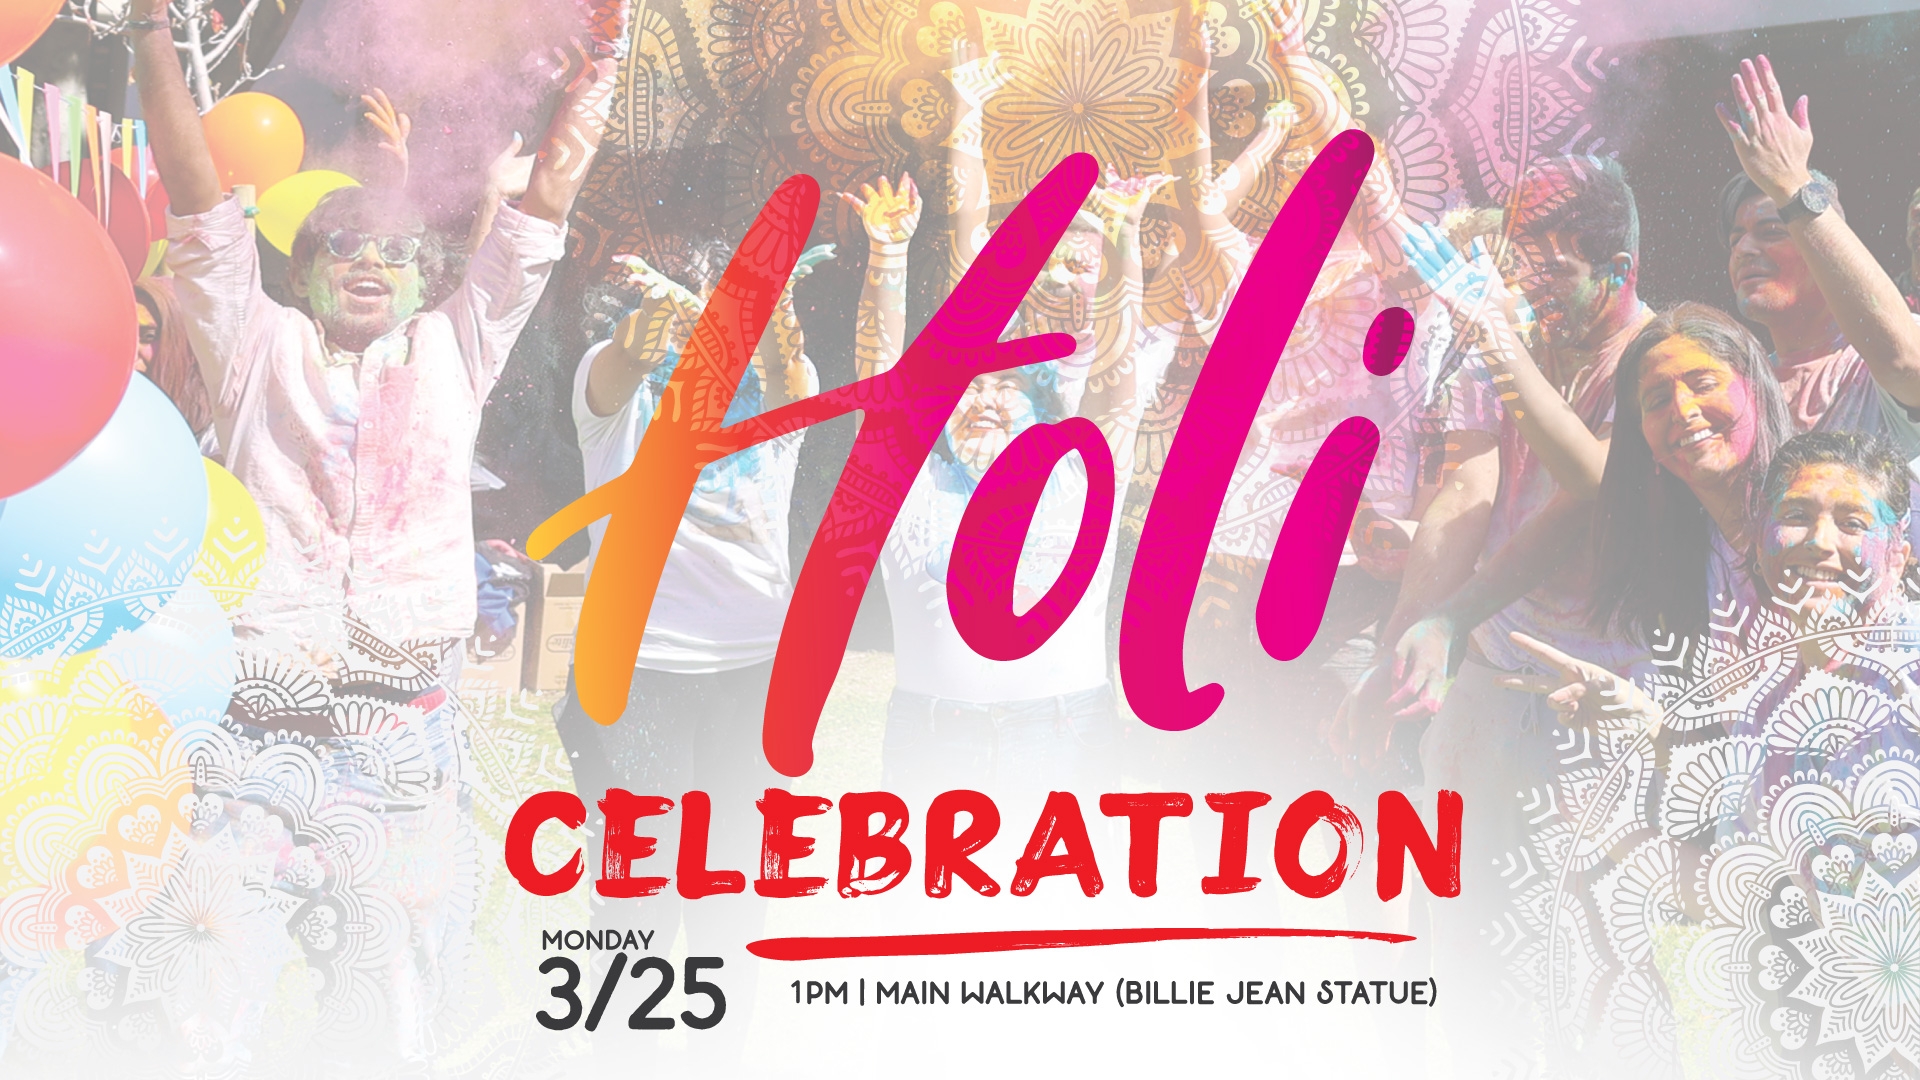 Holi Celebration